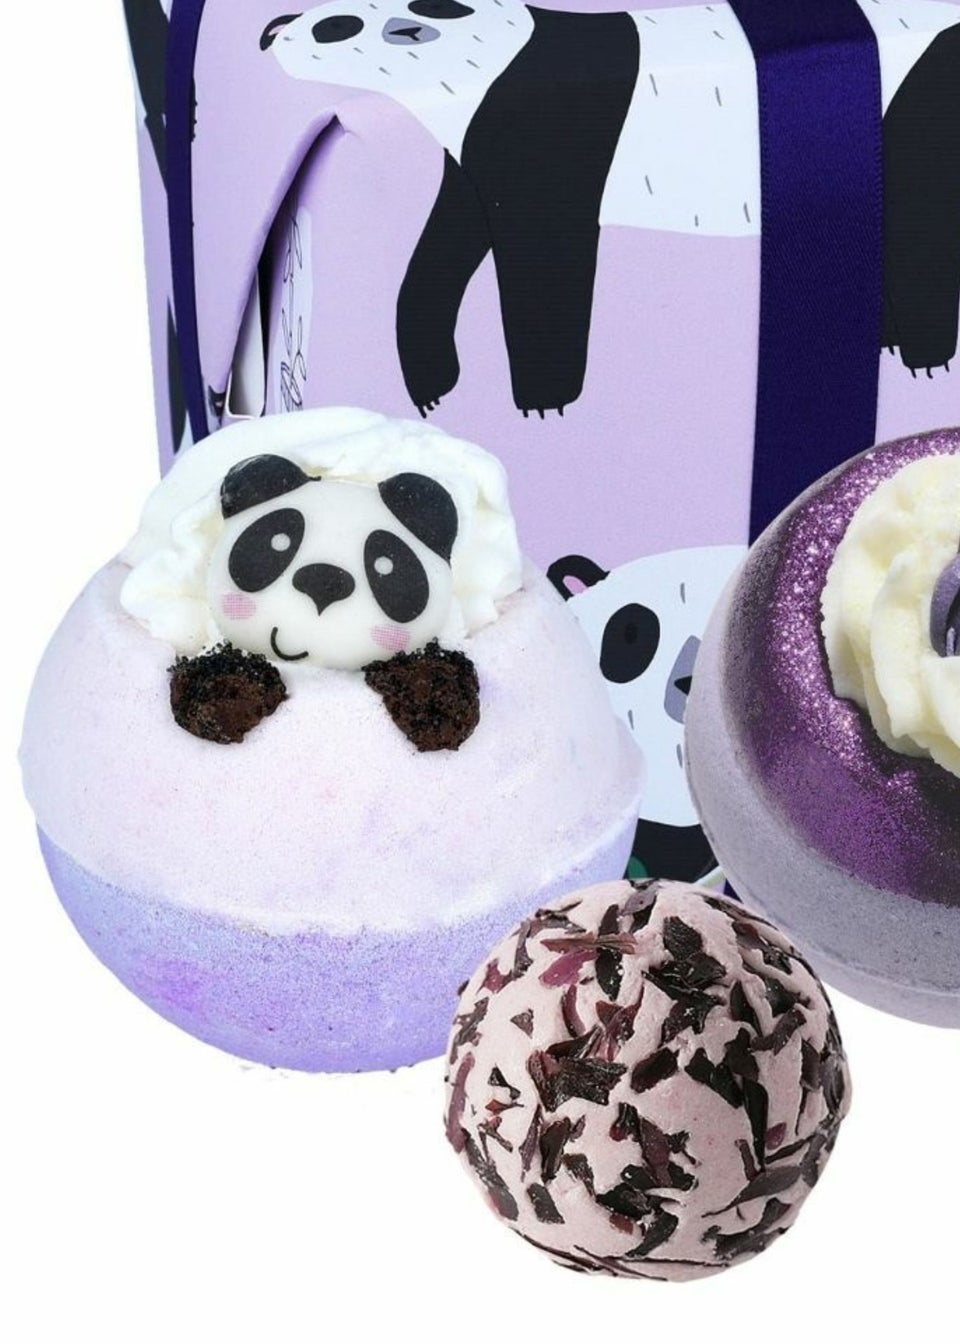 Bomb Cosmetics Panda Yourself Gift Set